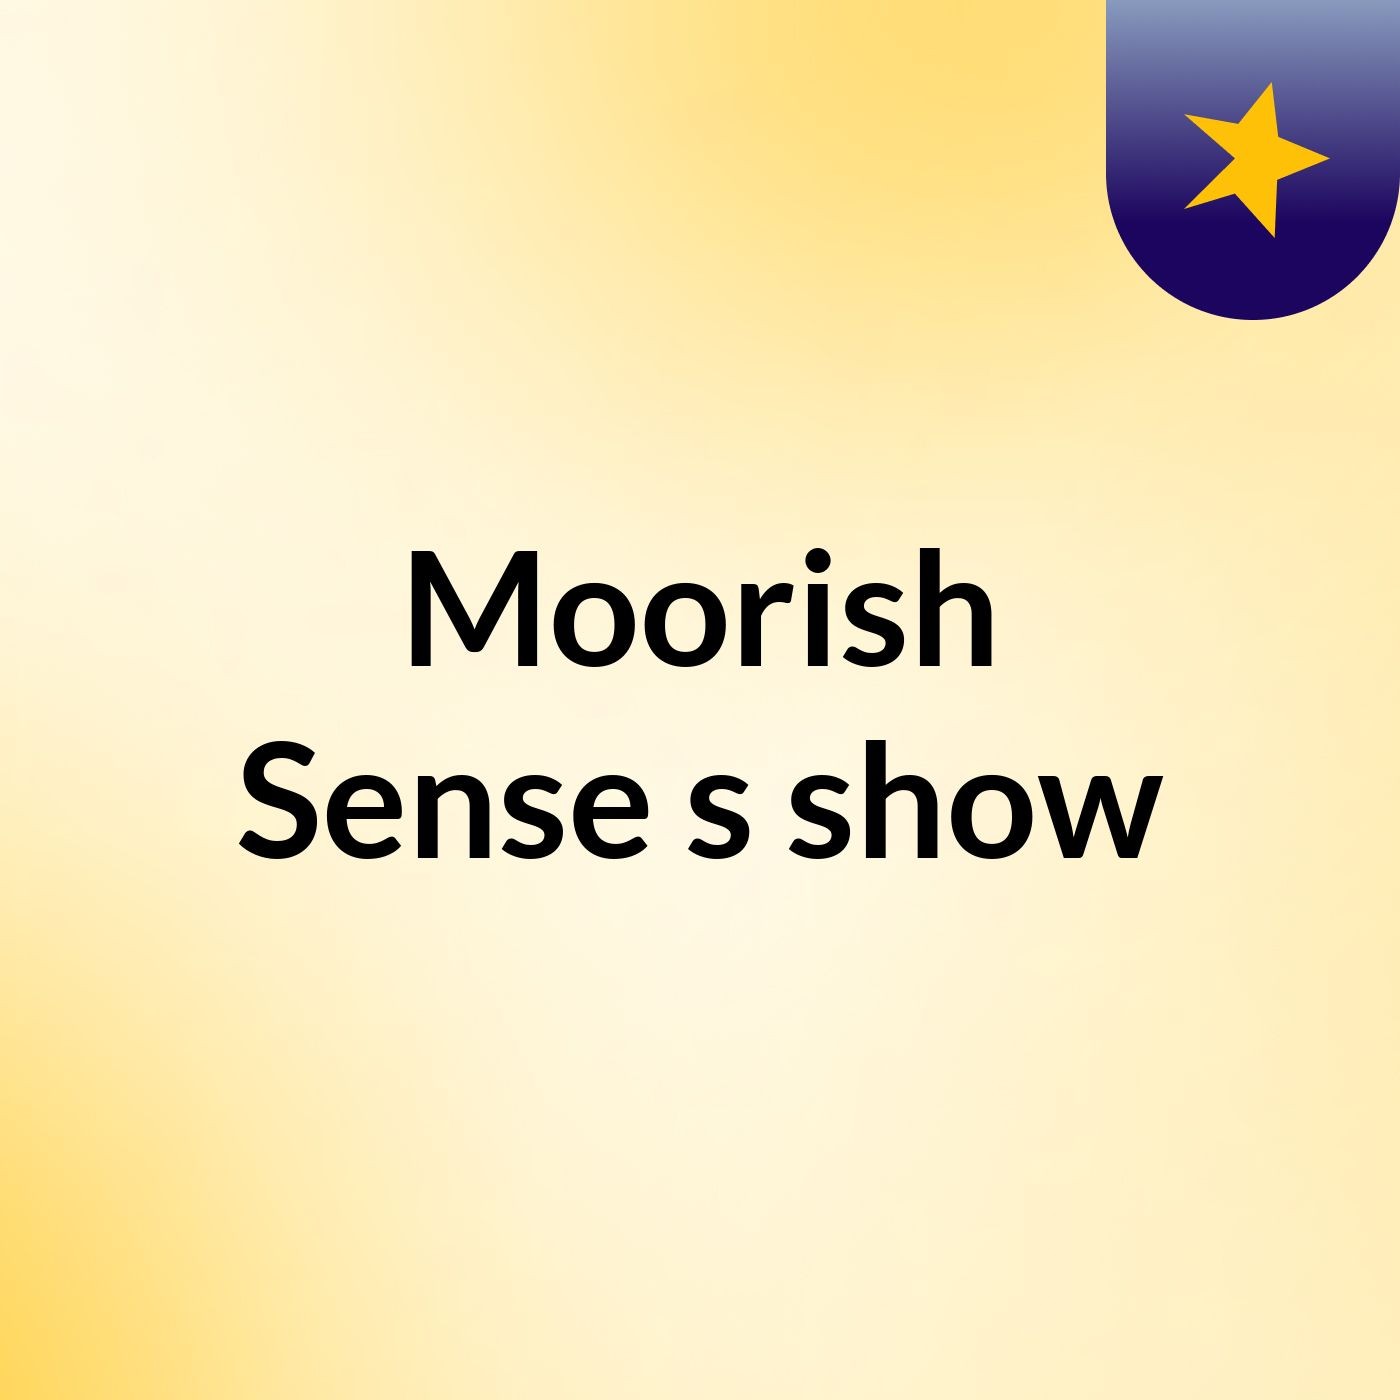 Moorish Sense's show